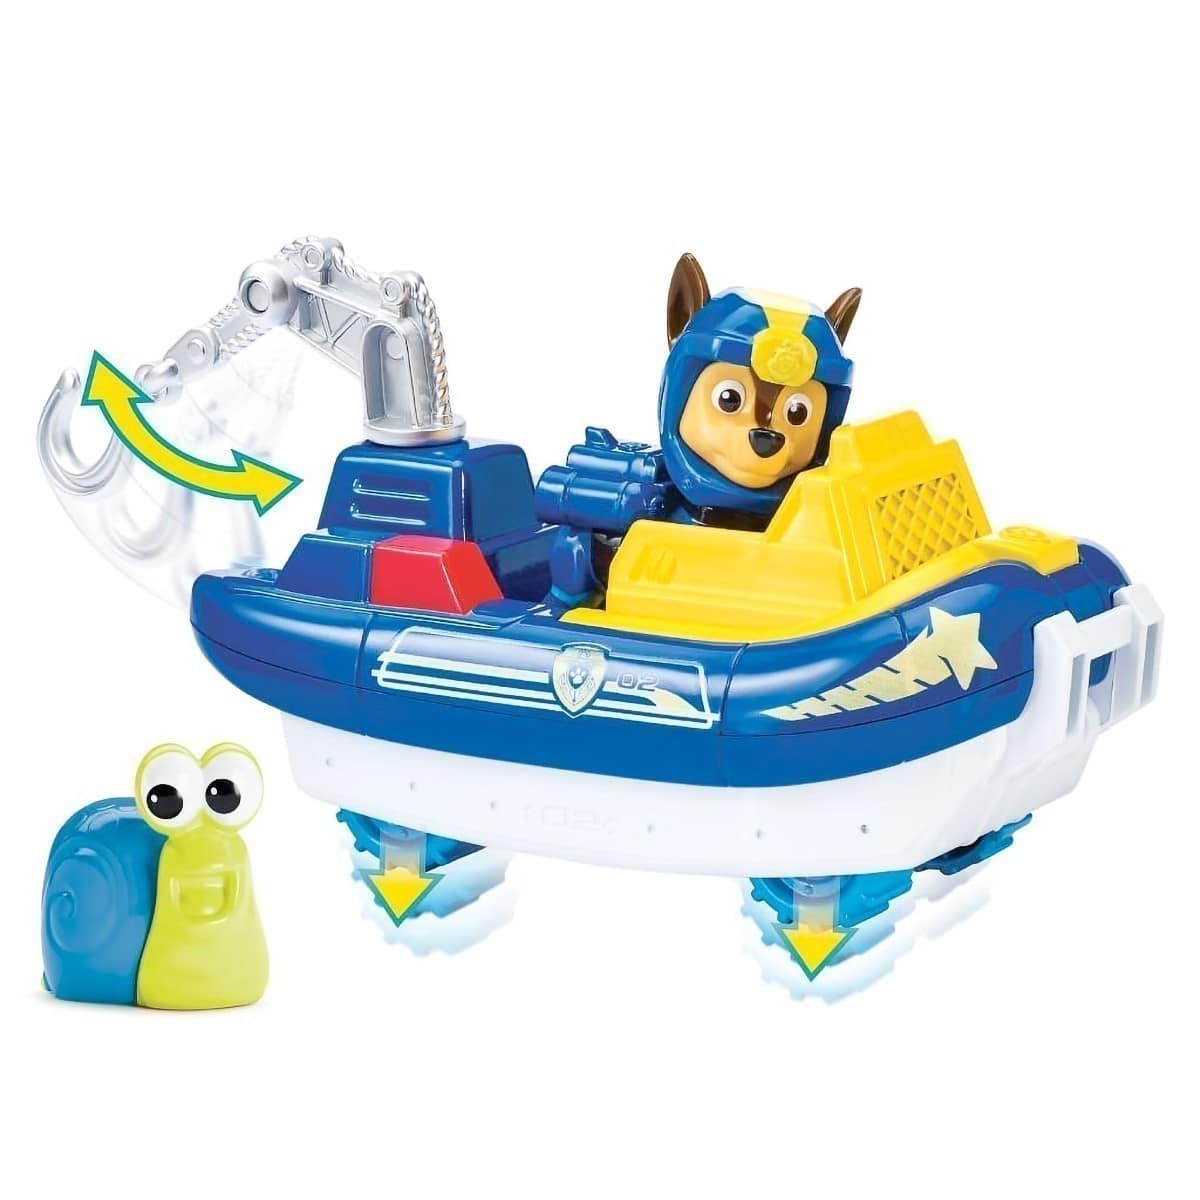 Nickelodeon - Paw Patrol - Transforming Sea Patrol Chase Vehicle